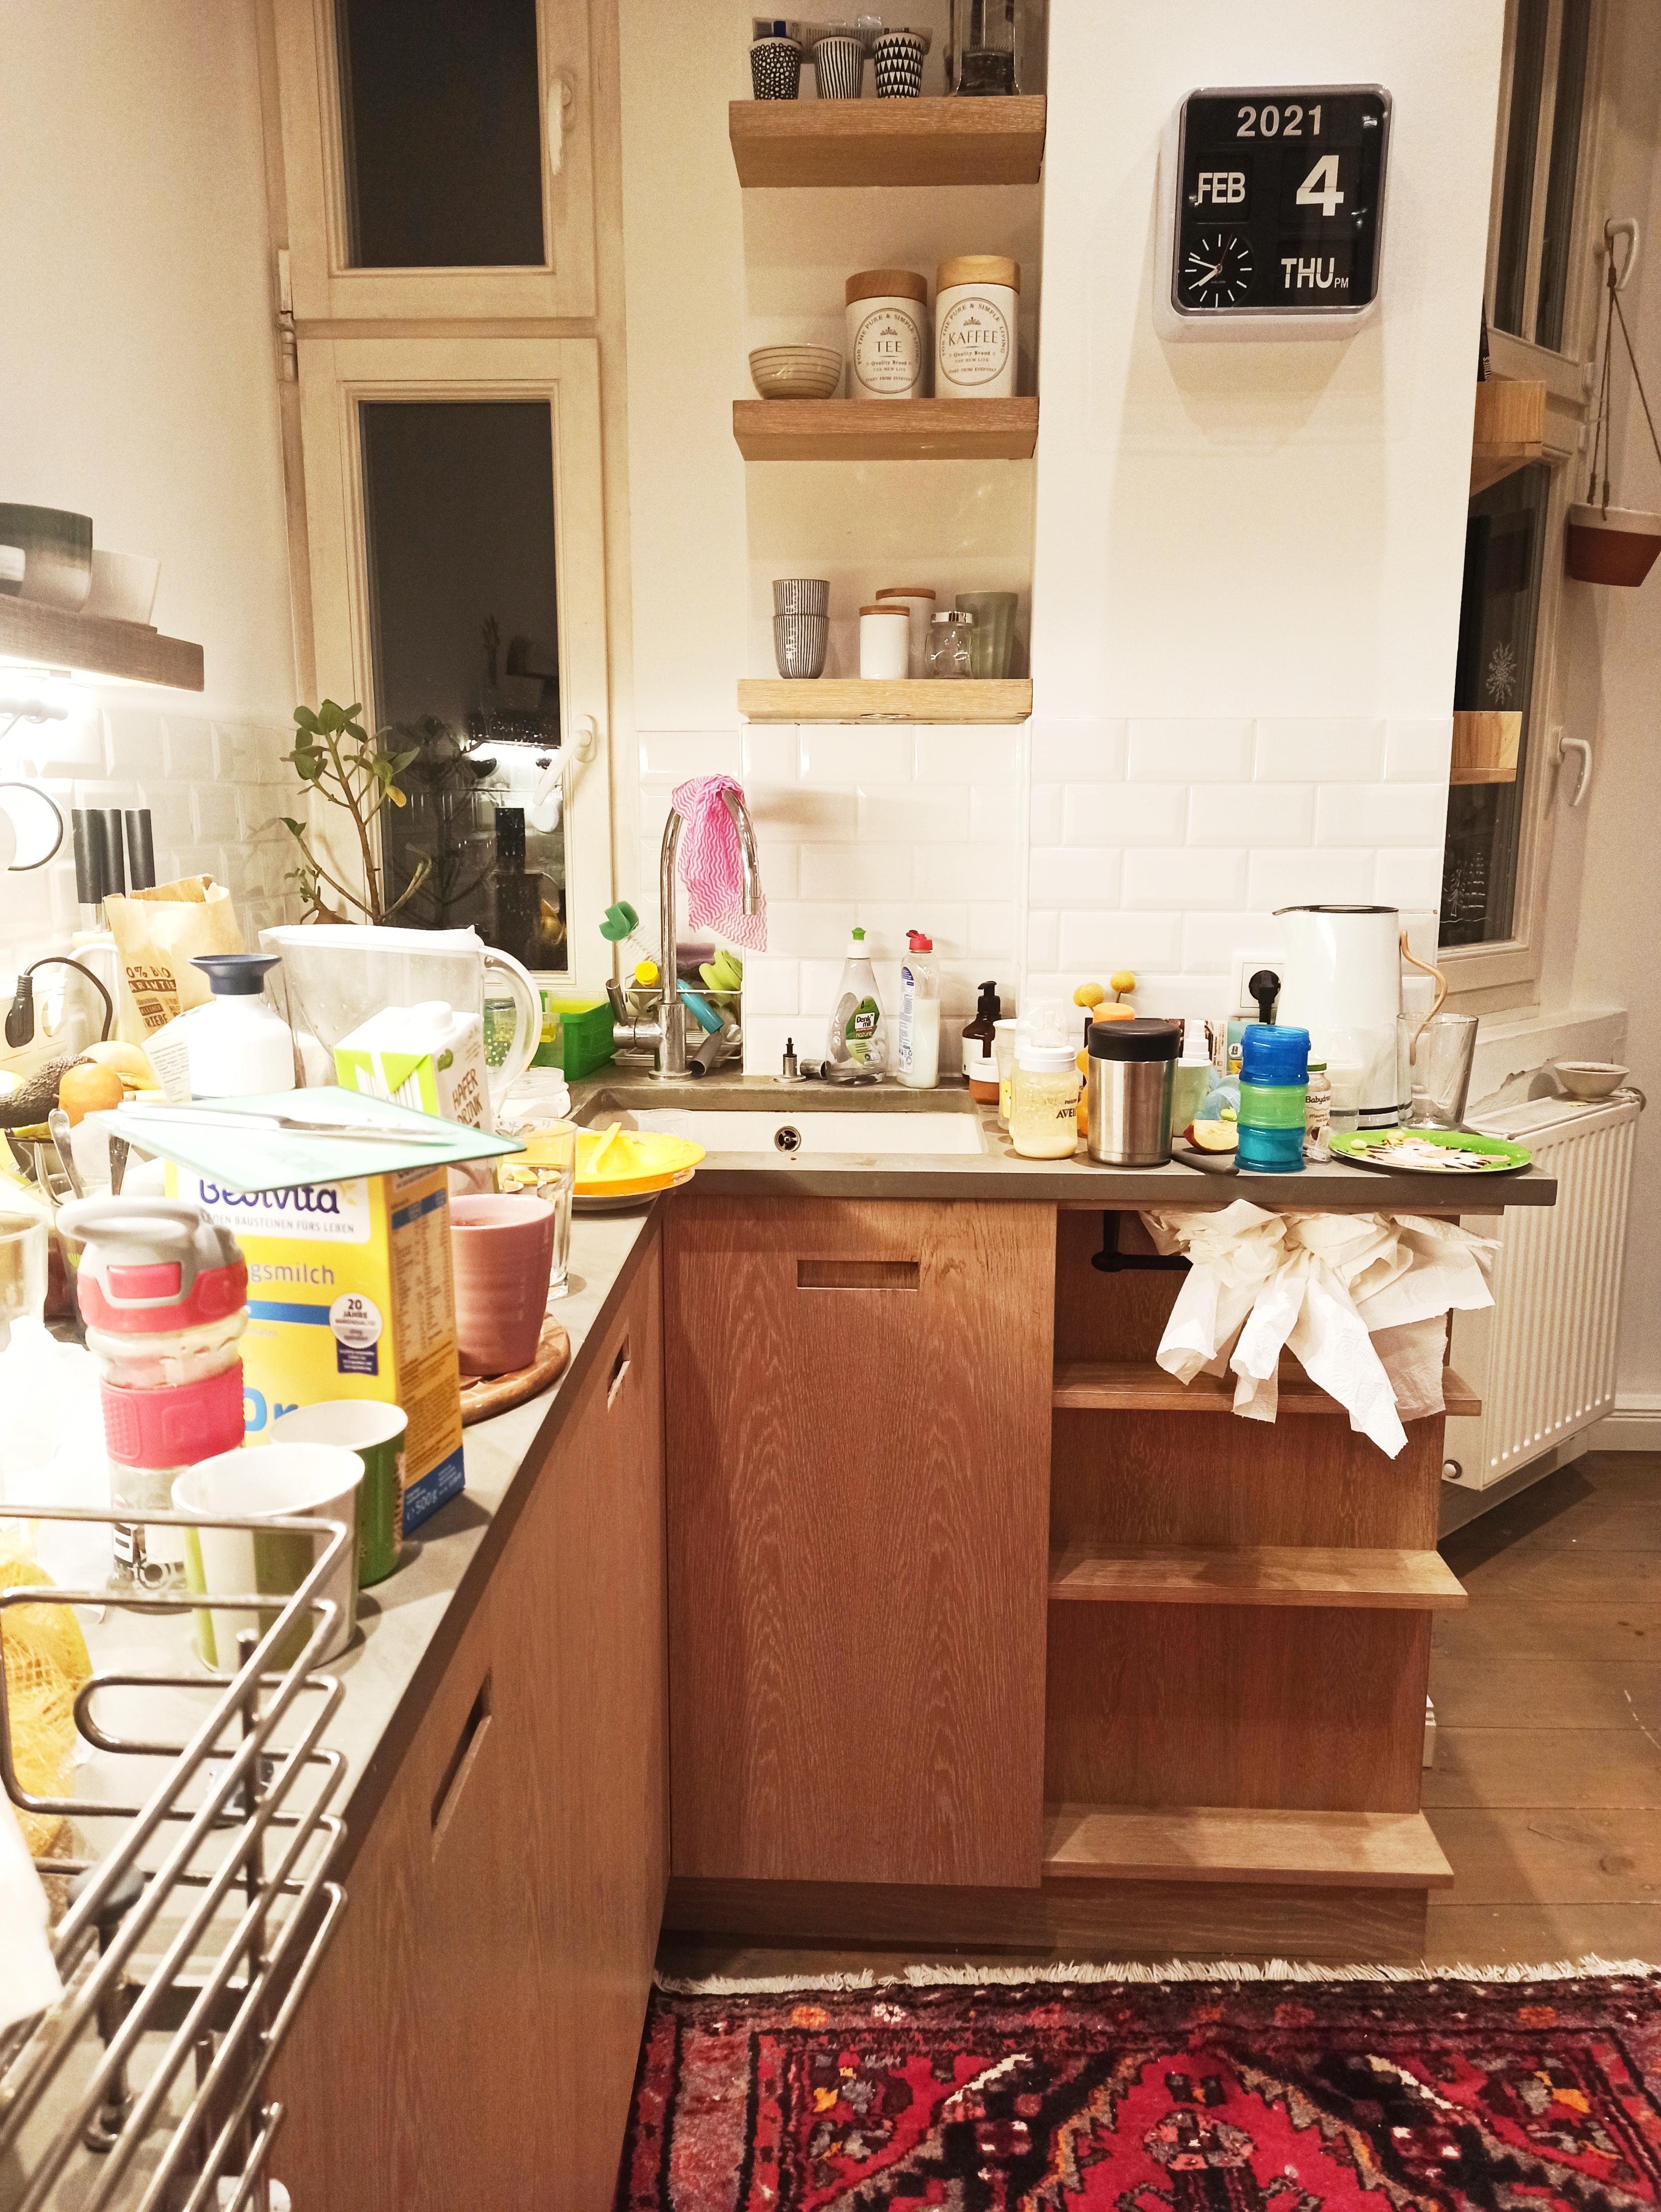 Hier, Clean Living. Ach nee, doch nicht. Bin ja Mutter von drei Kindern... #küche #sosiehtsaus #nominimalism